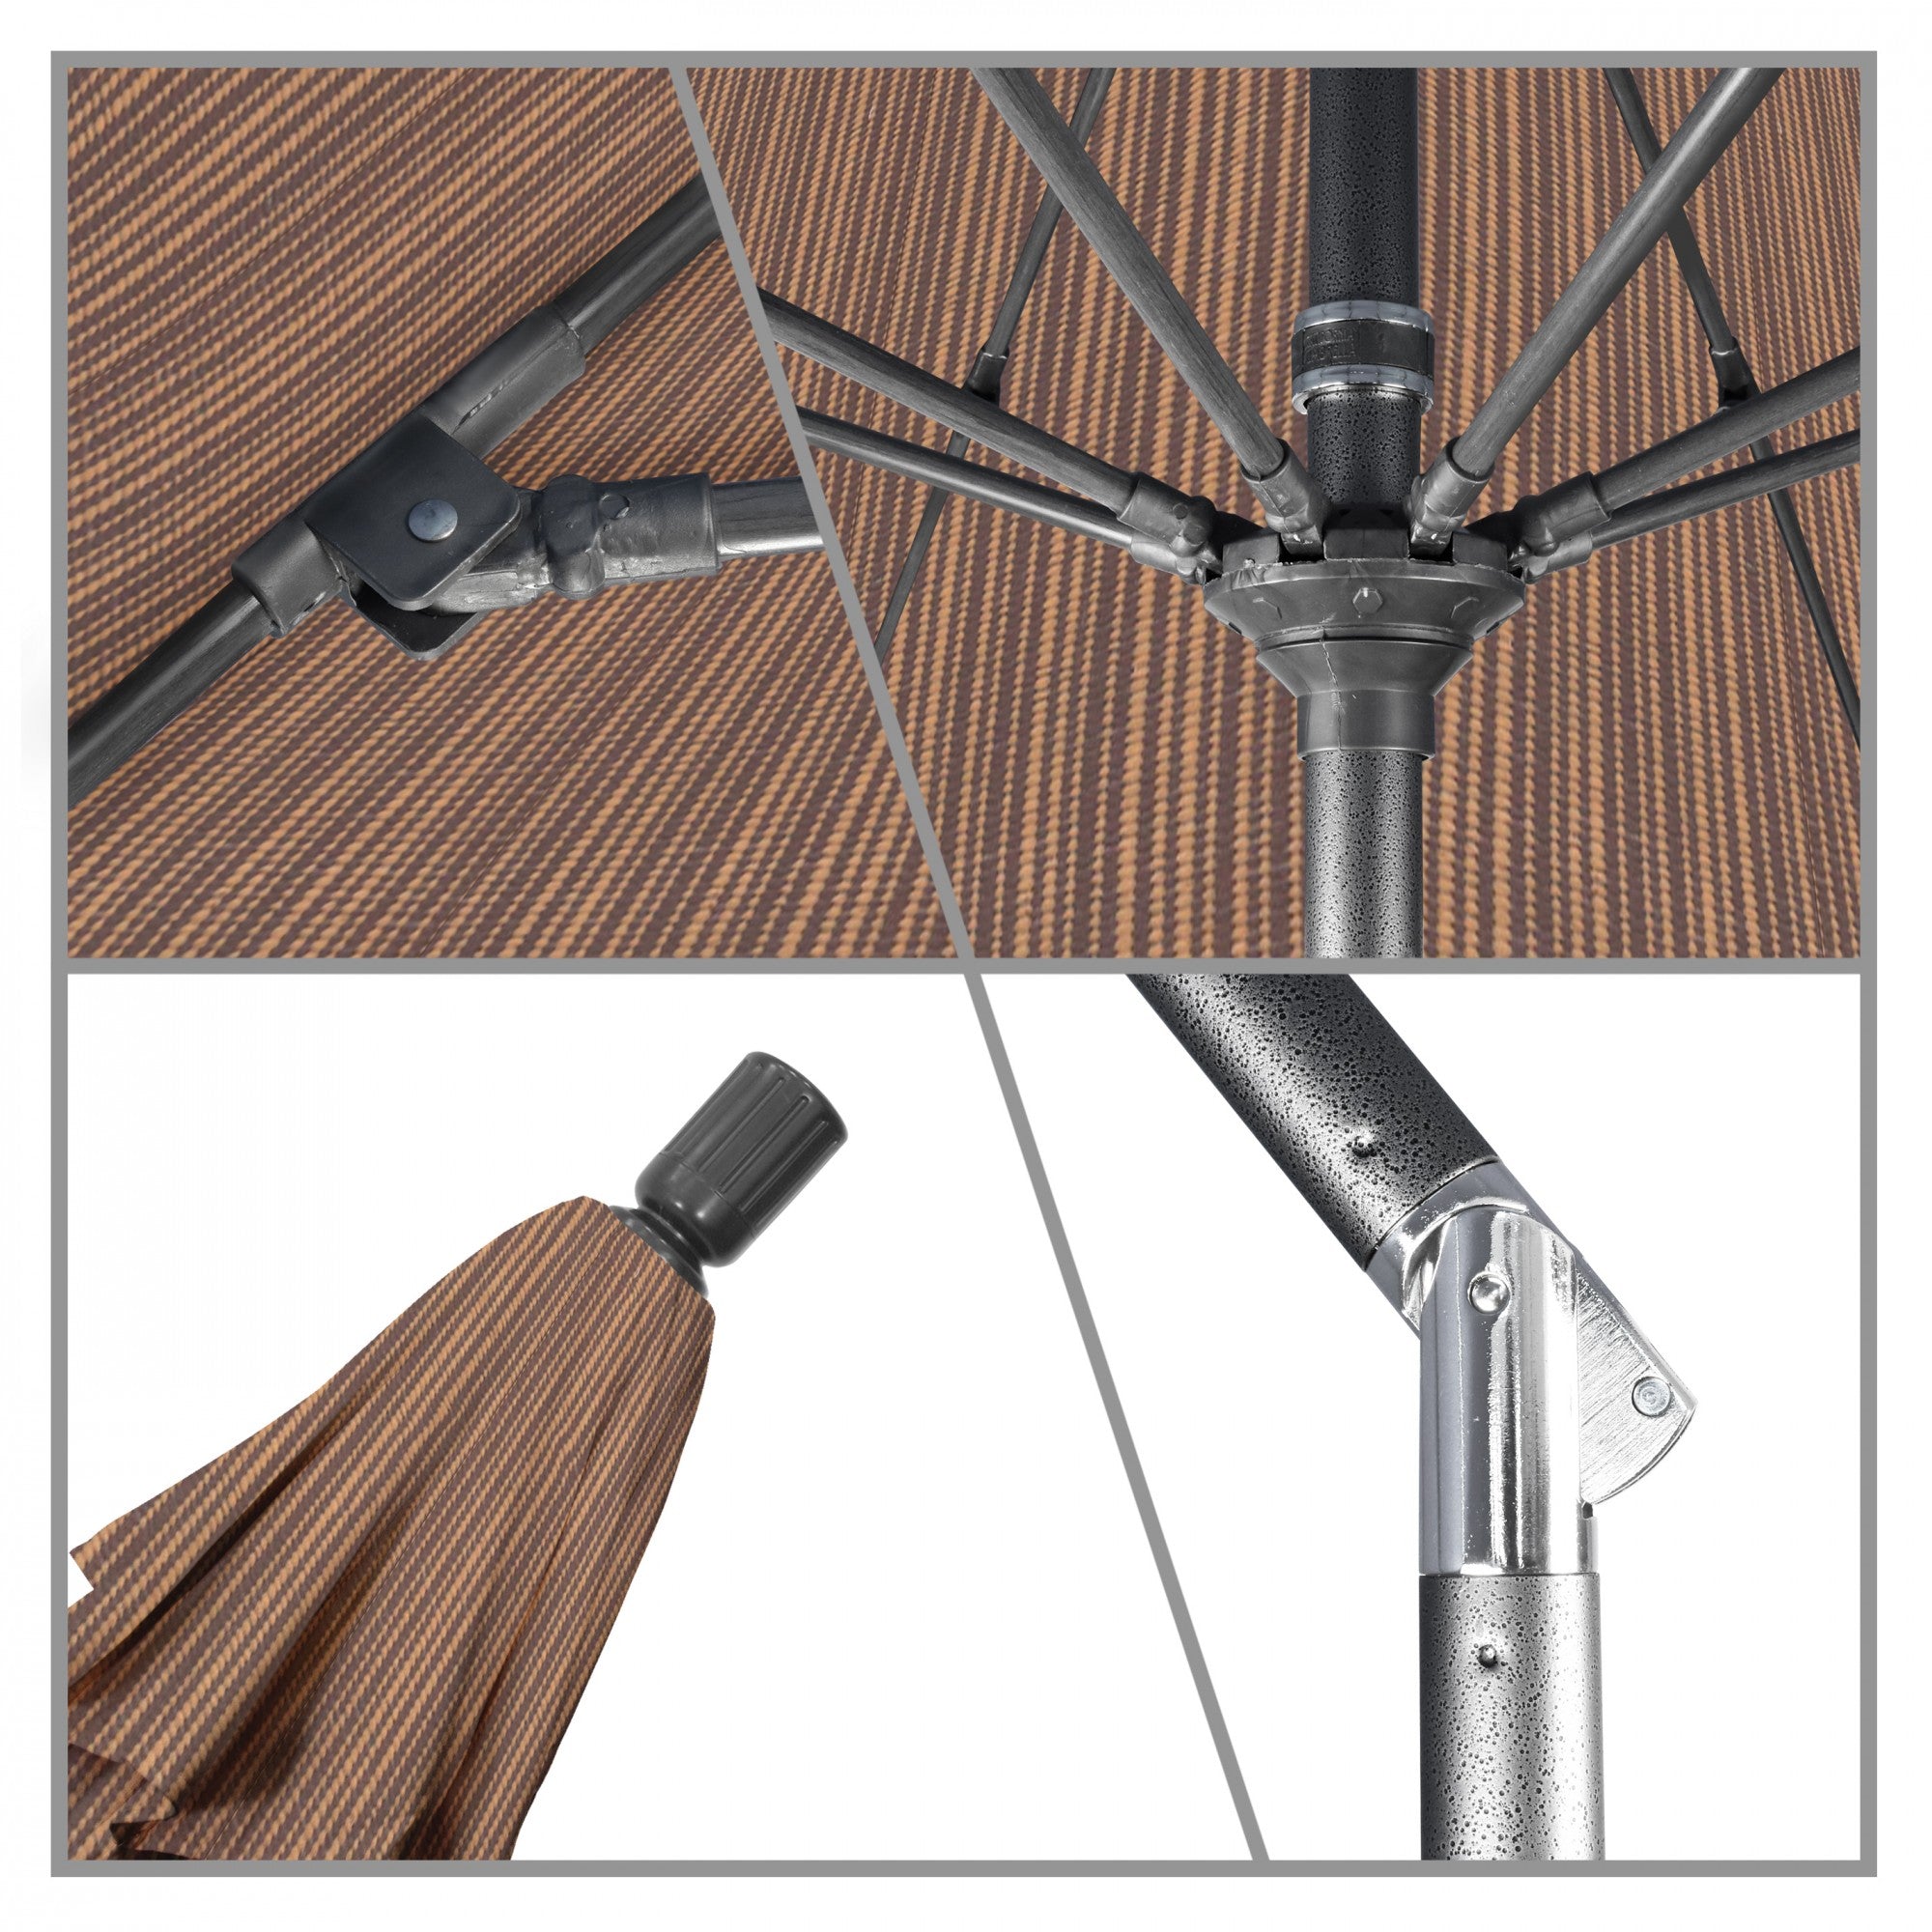 California Umbrella - 9' - Patio Umbrella Umbrella - Aluminum Pole - Terrace Sequoia - Olefin - GSCUF908010-FD10